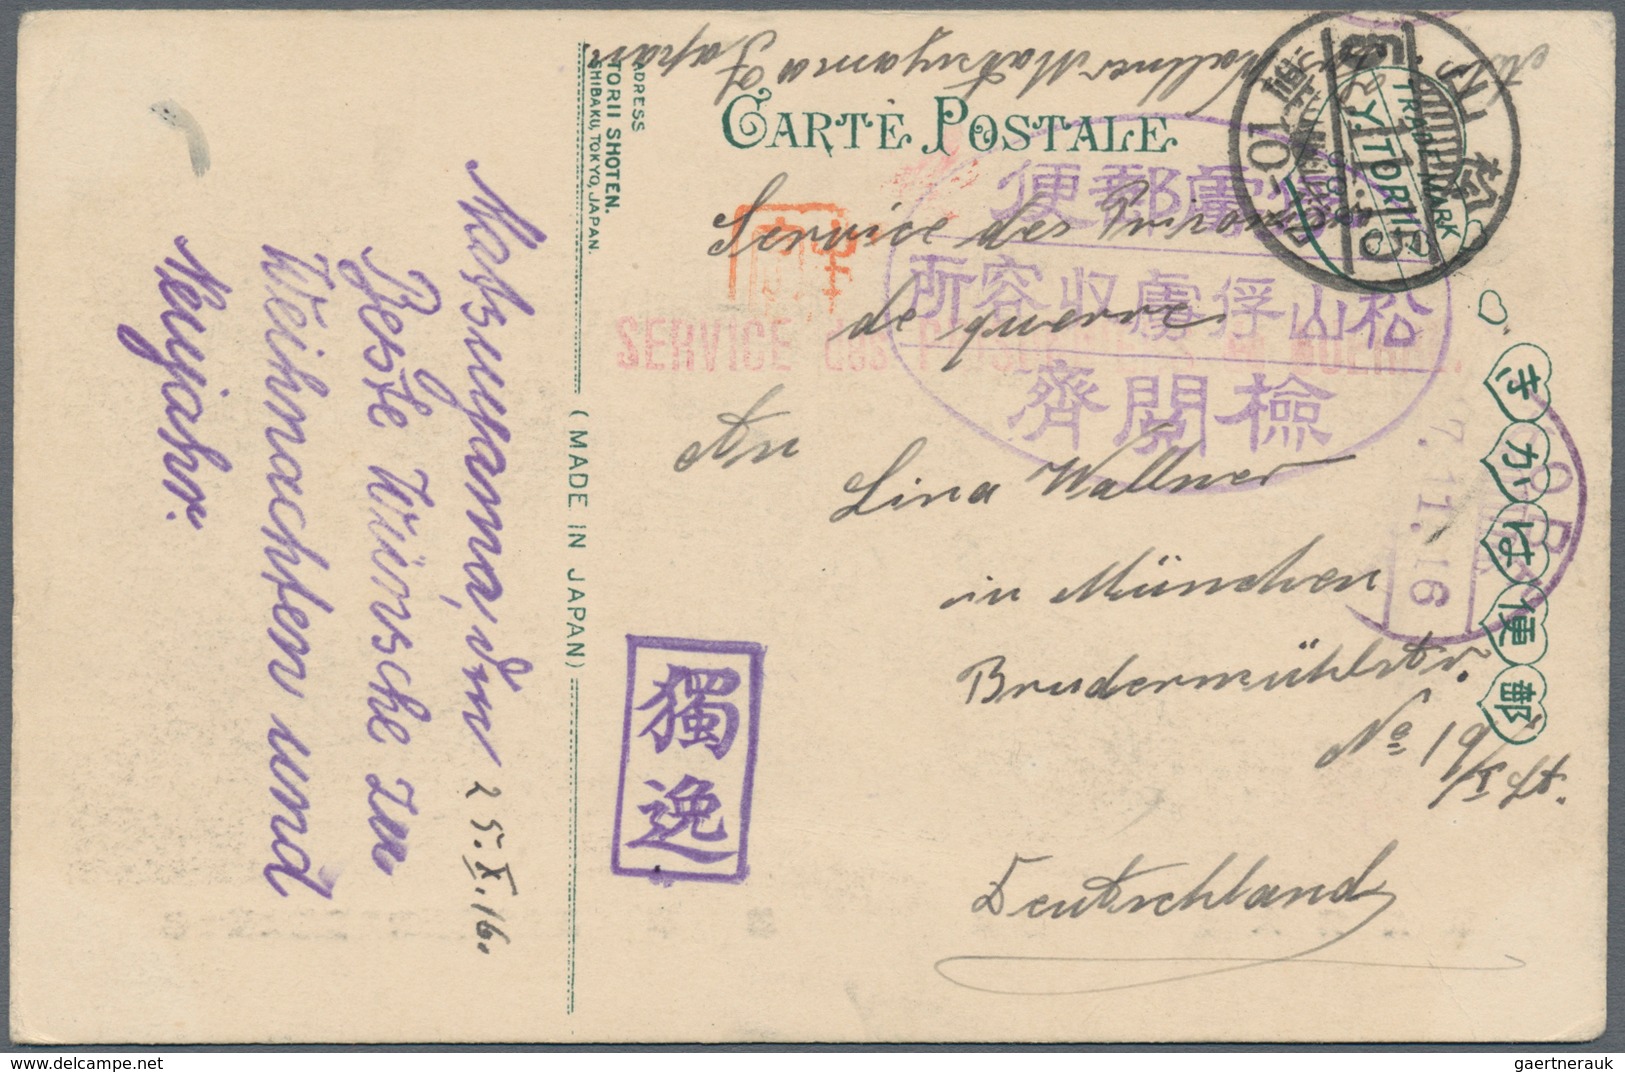 Deutsche Kolonien - Kiautschou - Kriegsgefangenenpost: Matsuyama: 1915/1917, fünf verschiedene Ansic